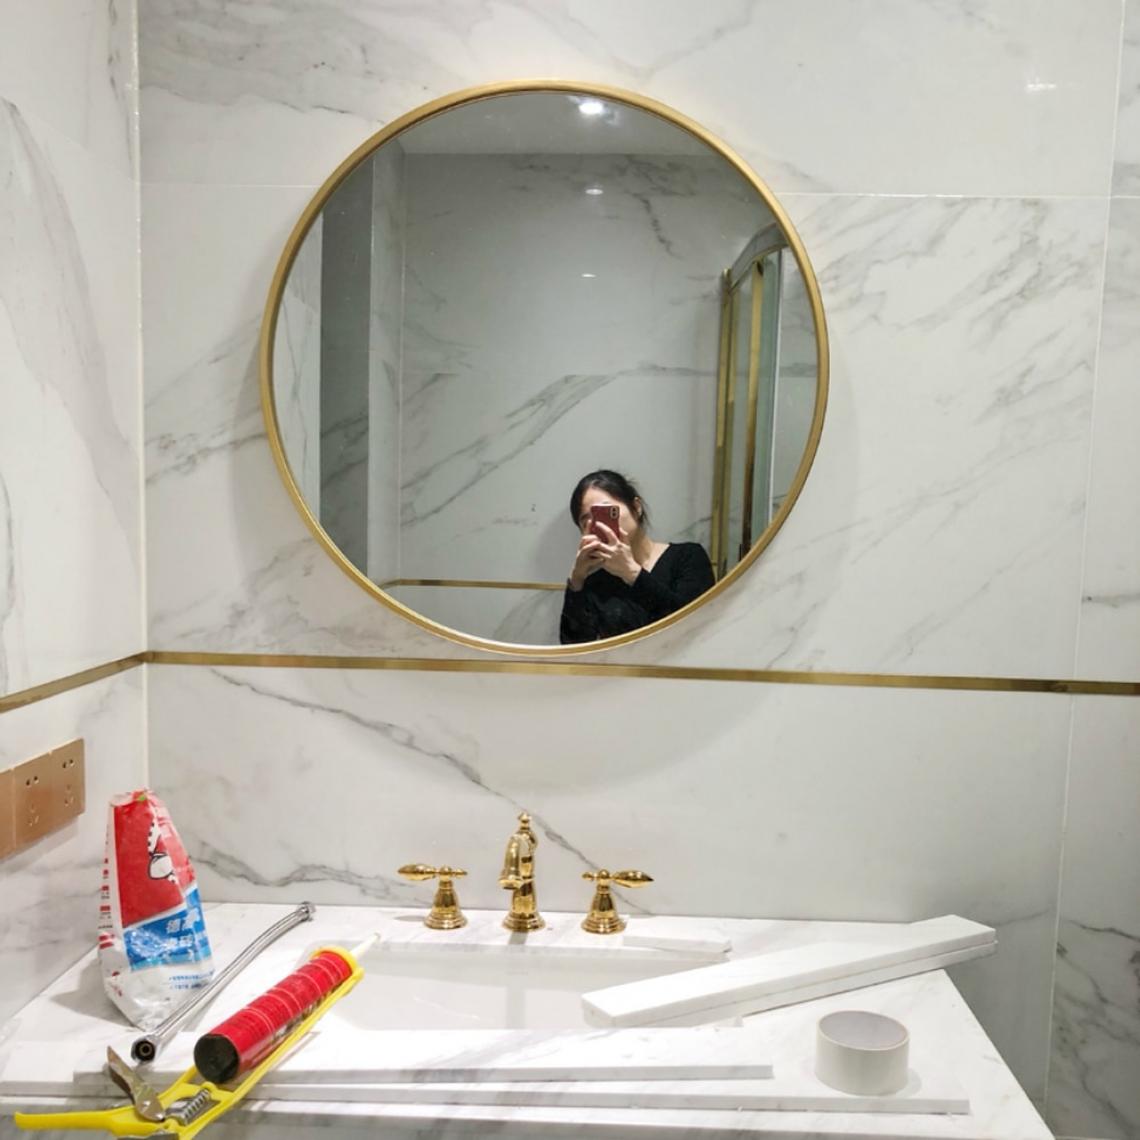 Universal - Miroir de salle de bains en or, miroir de maquillage, miroir mural de salle de bains en fer(Or) - Miroir de salle de bain